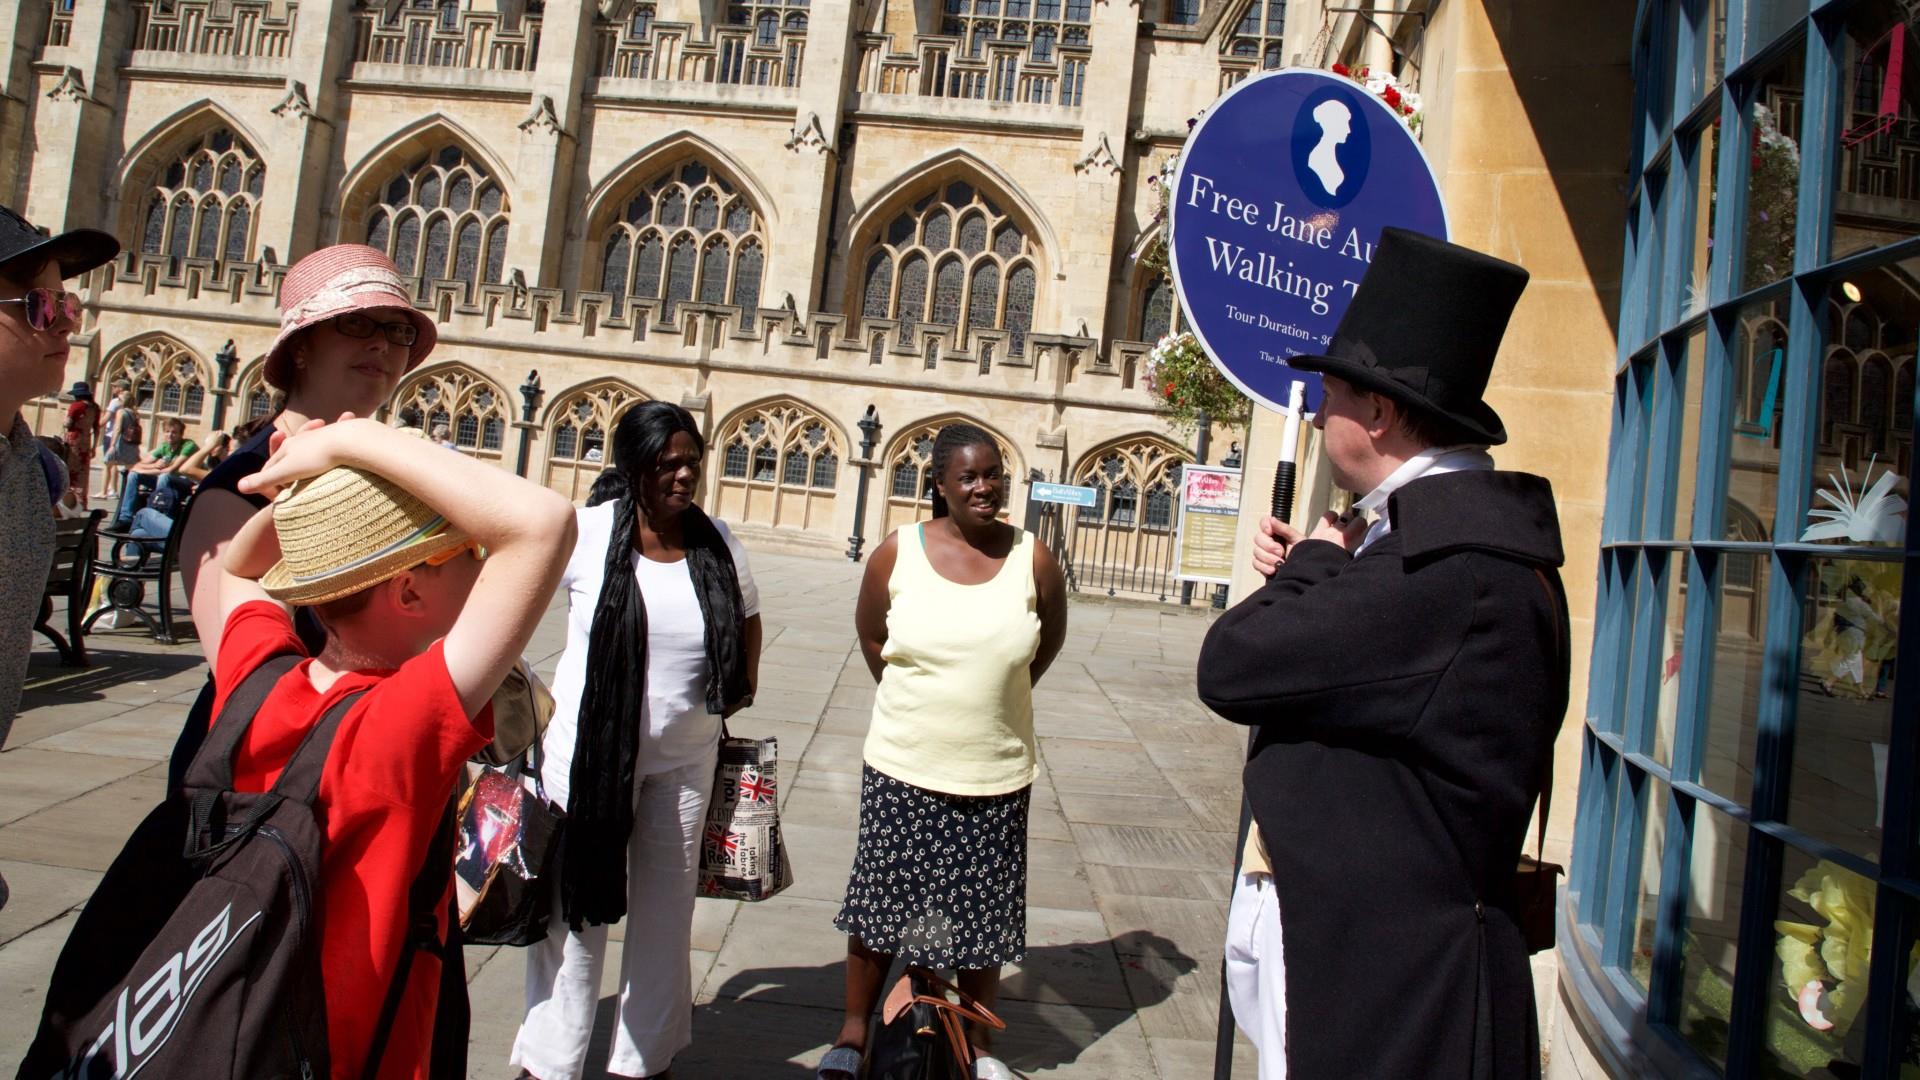 Group enjoy a Free Jane Austen Walking Tour in Bath